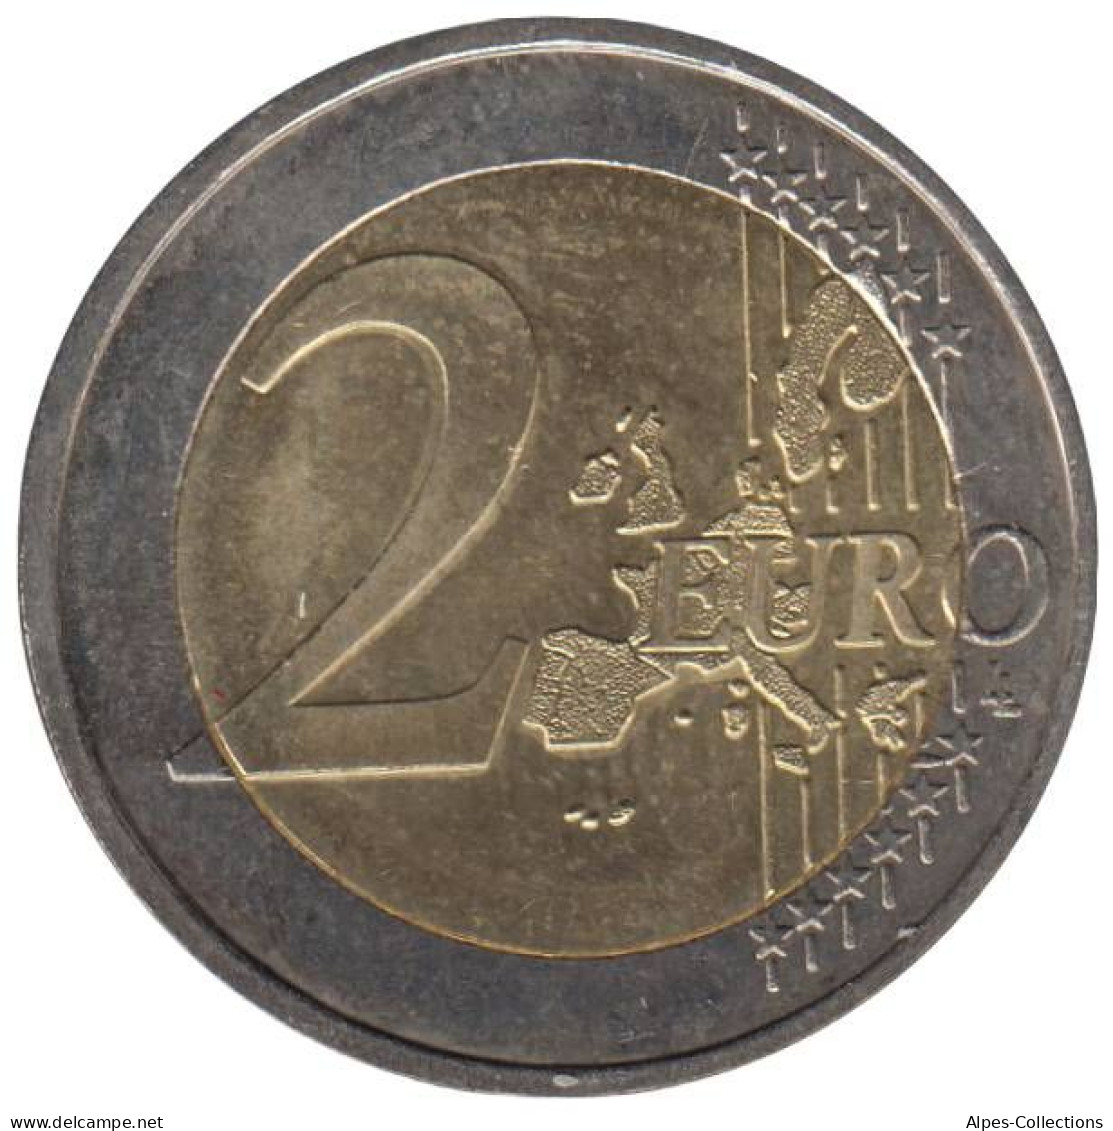 MO20002.1 - MONACO - 2 Euros - 2002 - Mónaco